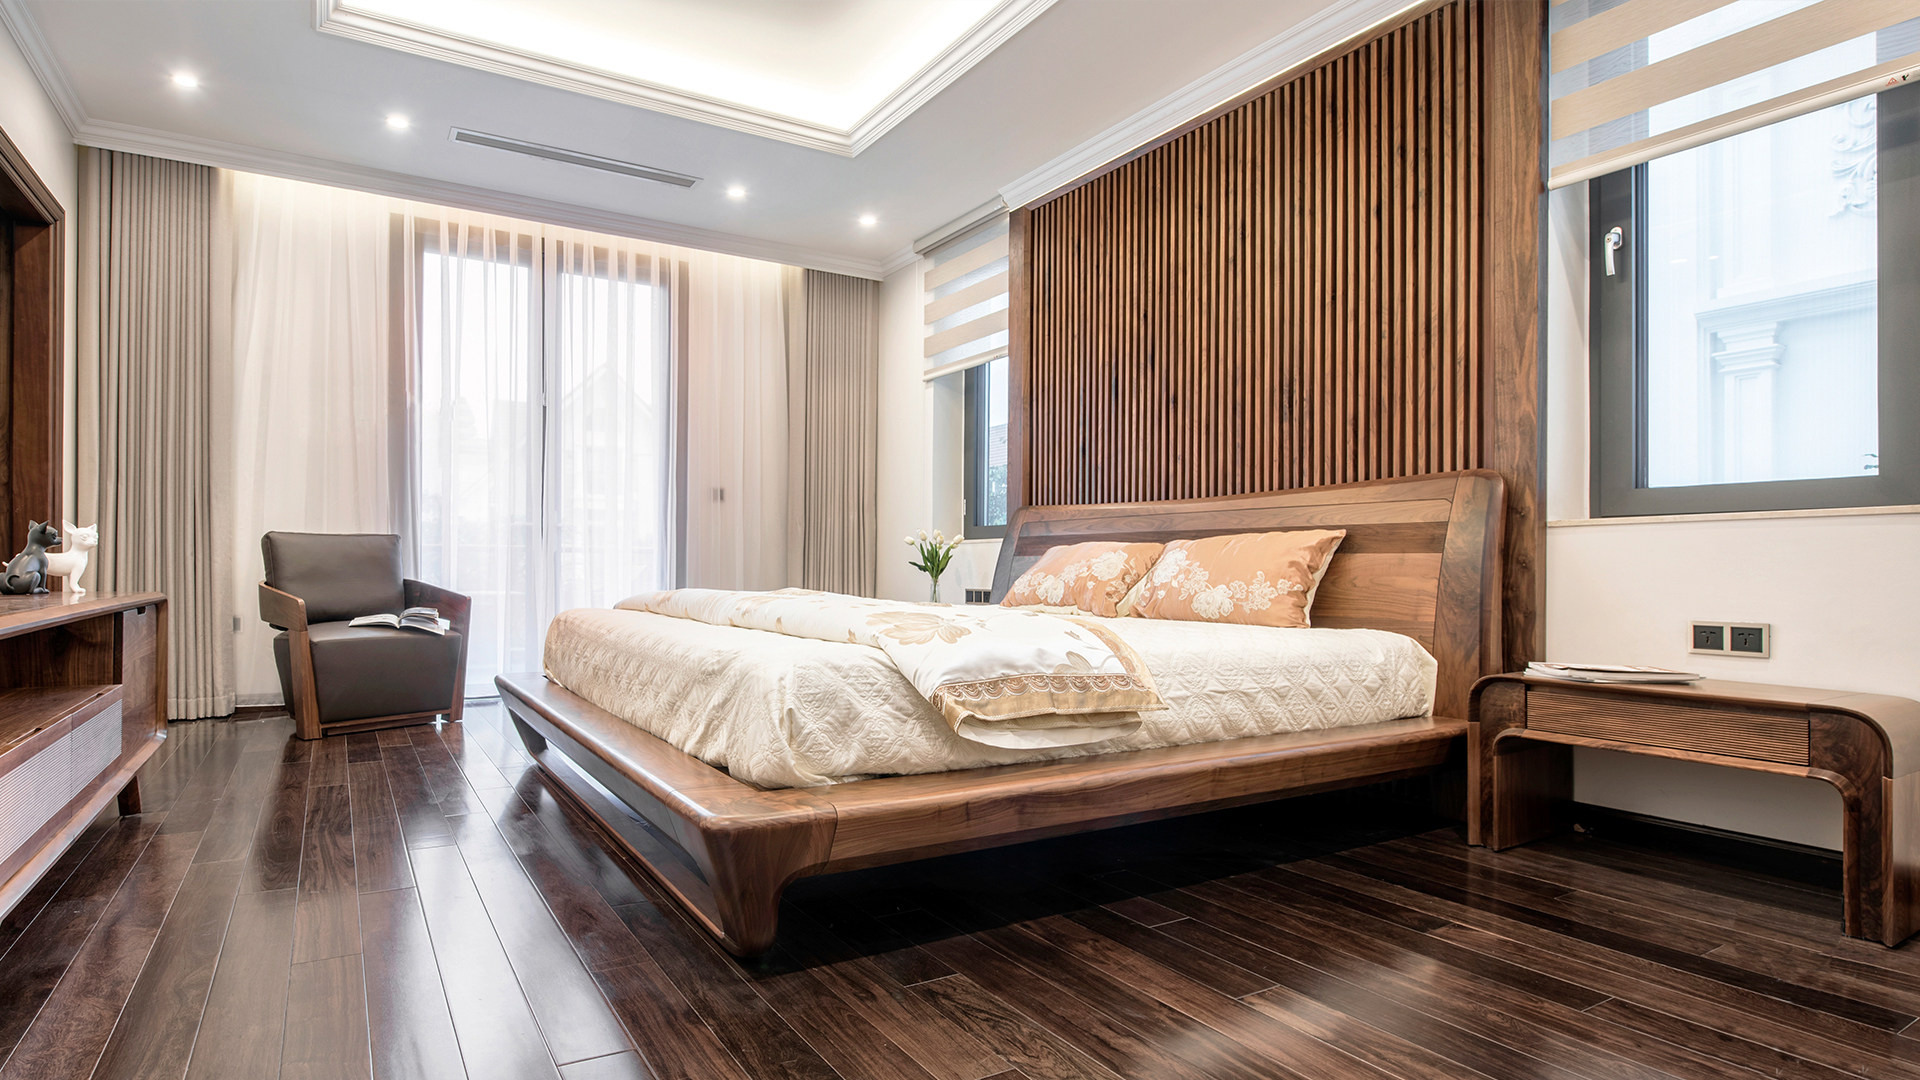 30 mẫu thiết kế phòng ngủ đẹp hiện đại cập nhật 072017